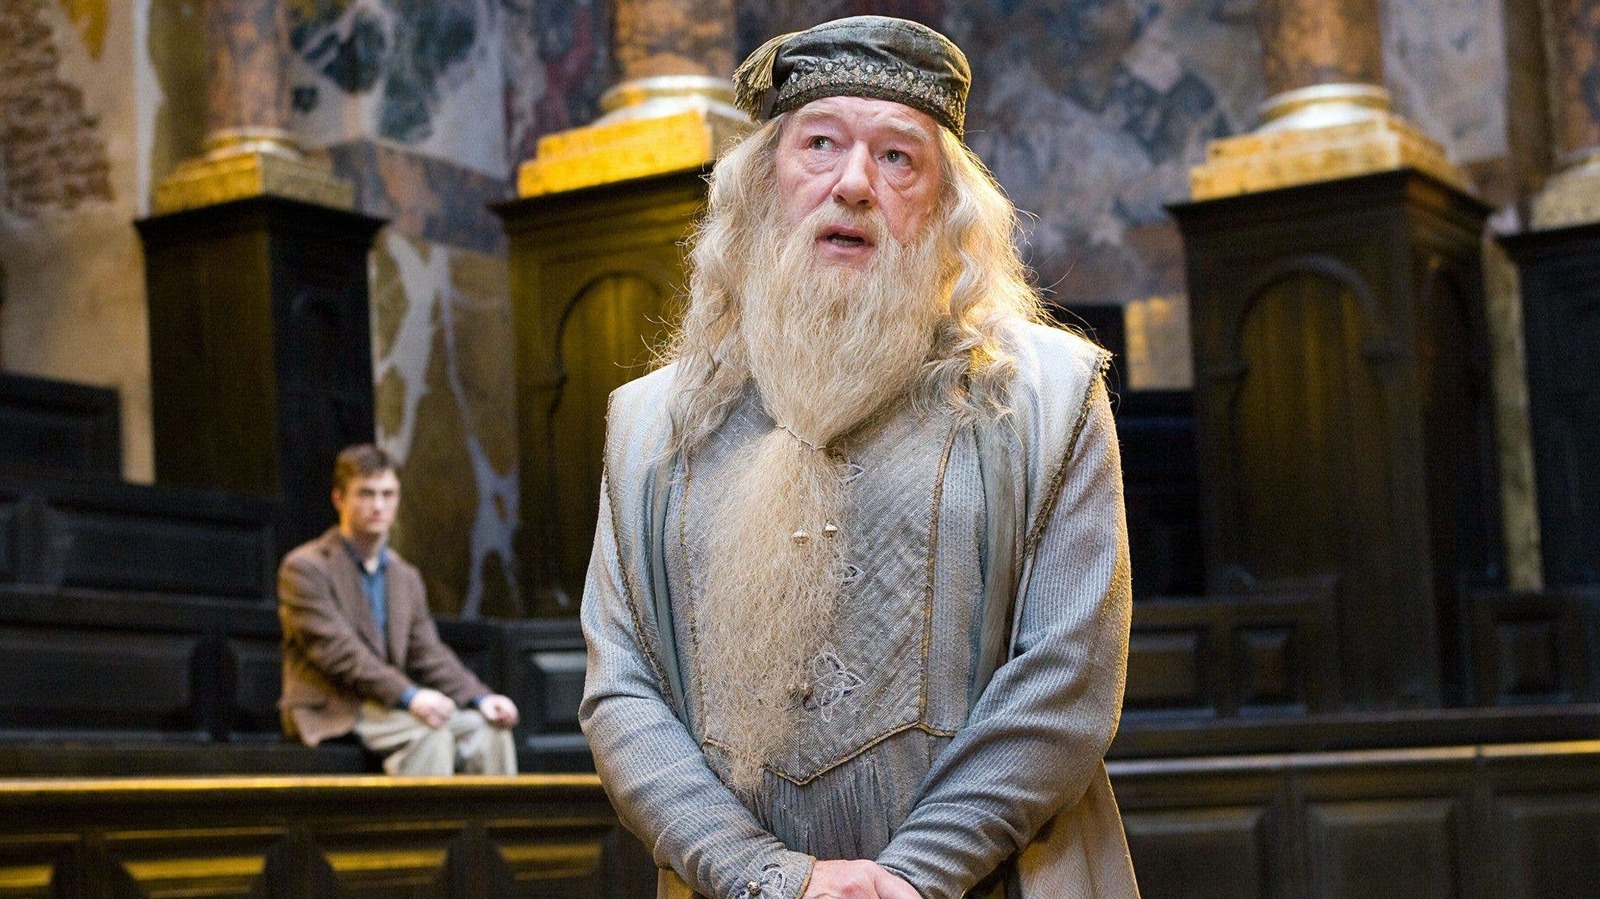 Dumbledore puzzled